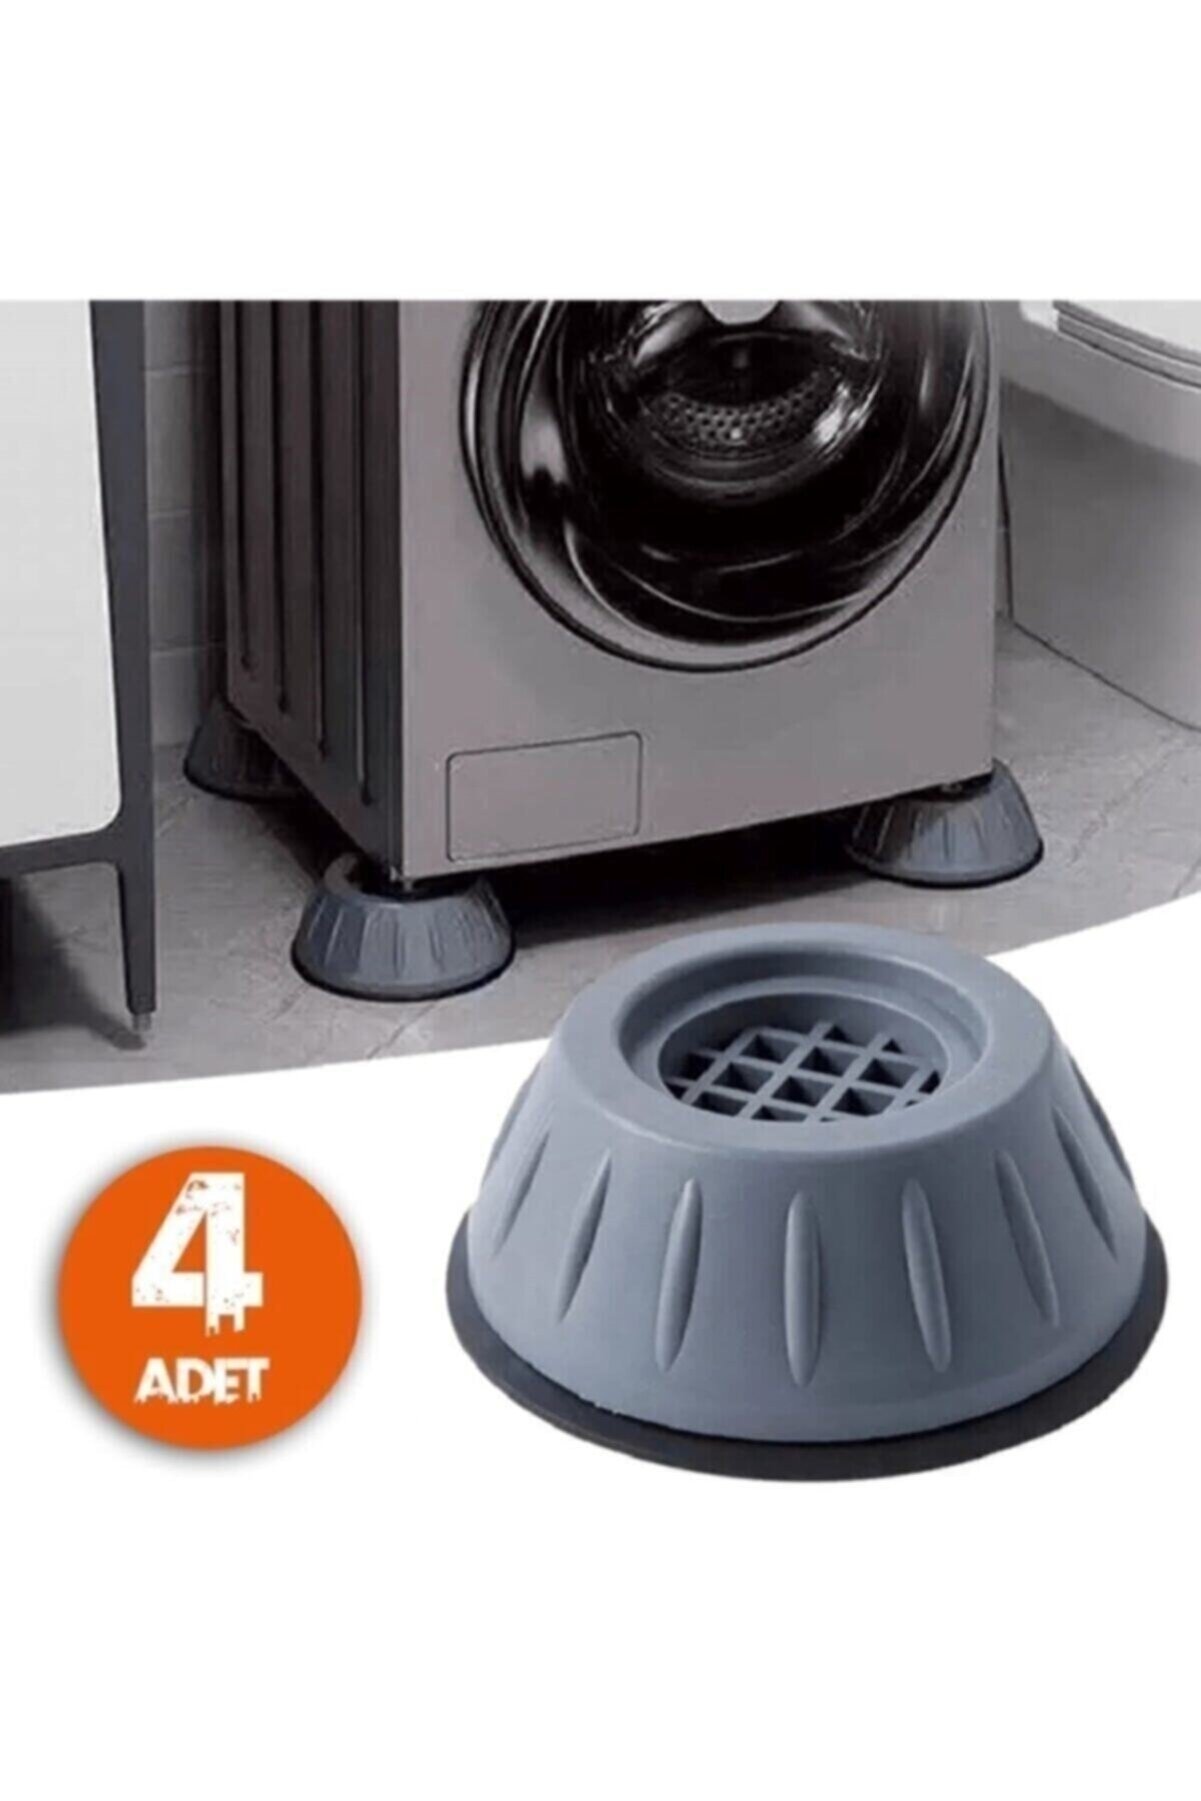 Genel Markalar Beyaz Eşya Altlığı Ayağı 4 Adet Çamaşır Bulaşık Makinası Buzdolabı Yükseltici Titreşim Önleyici